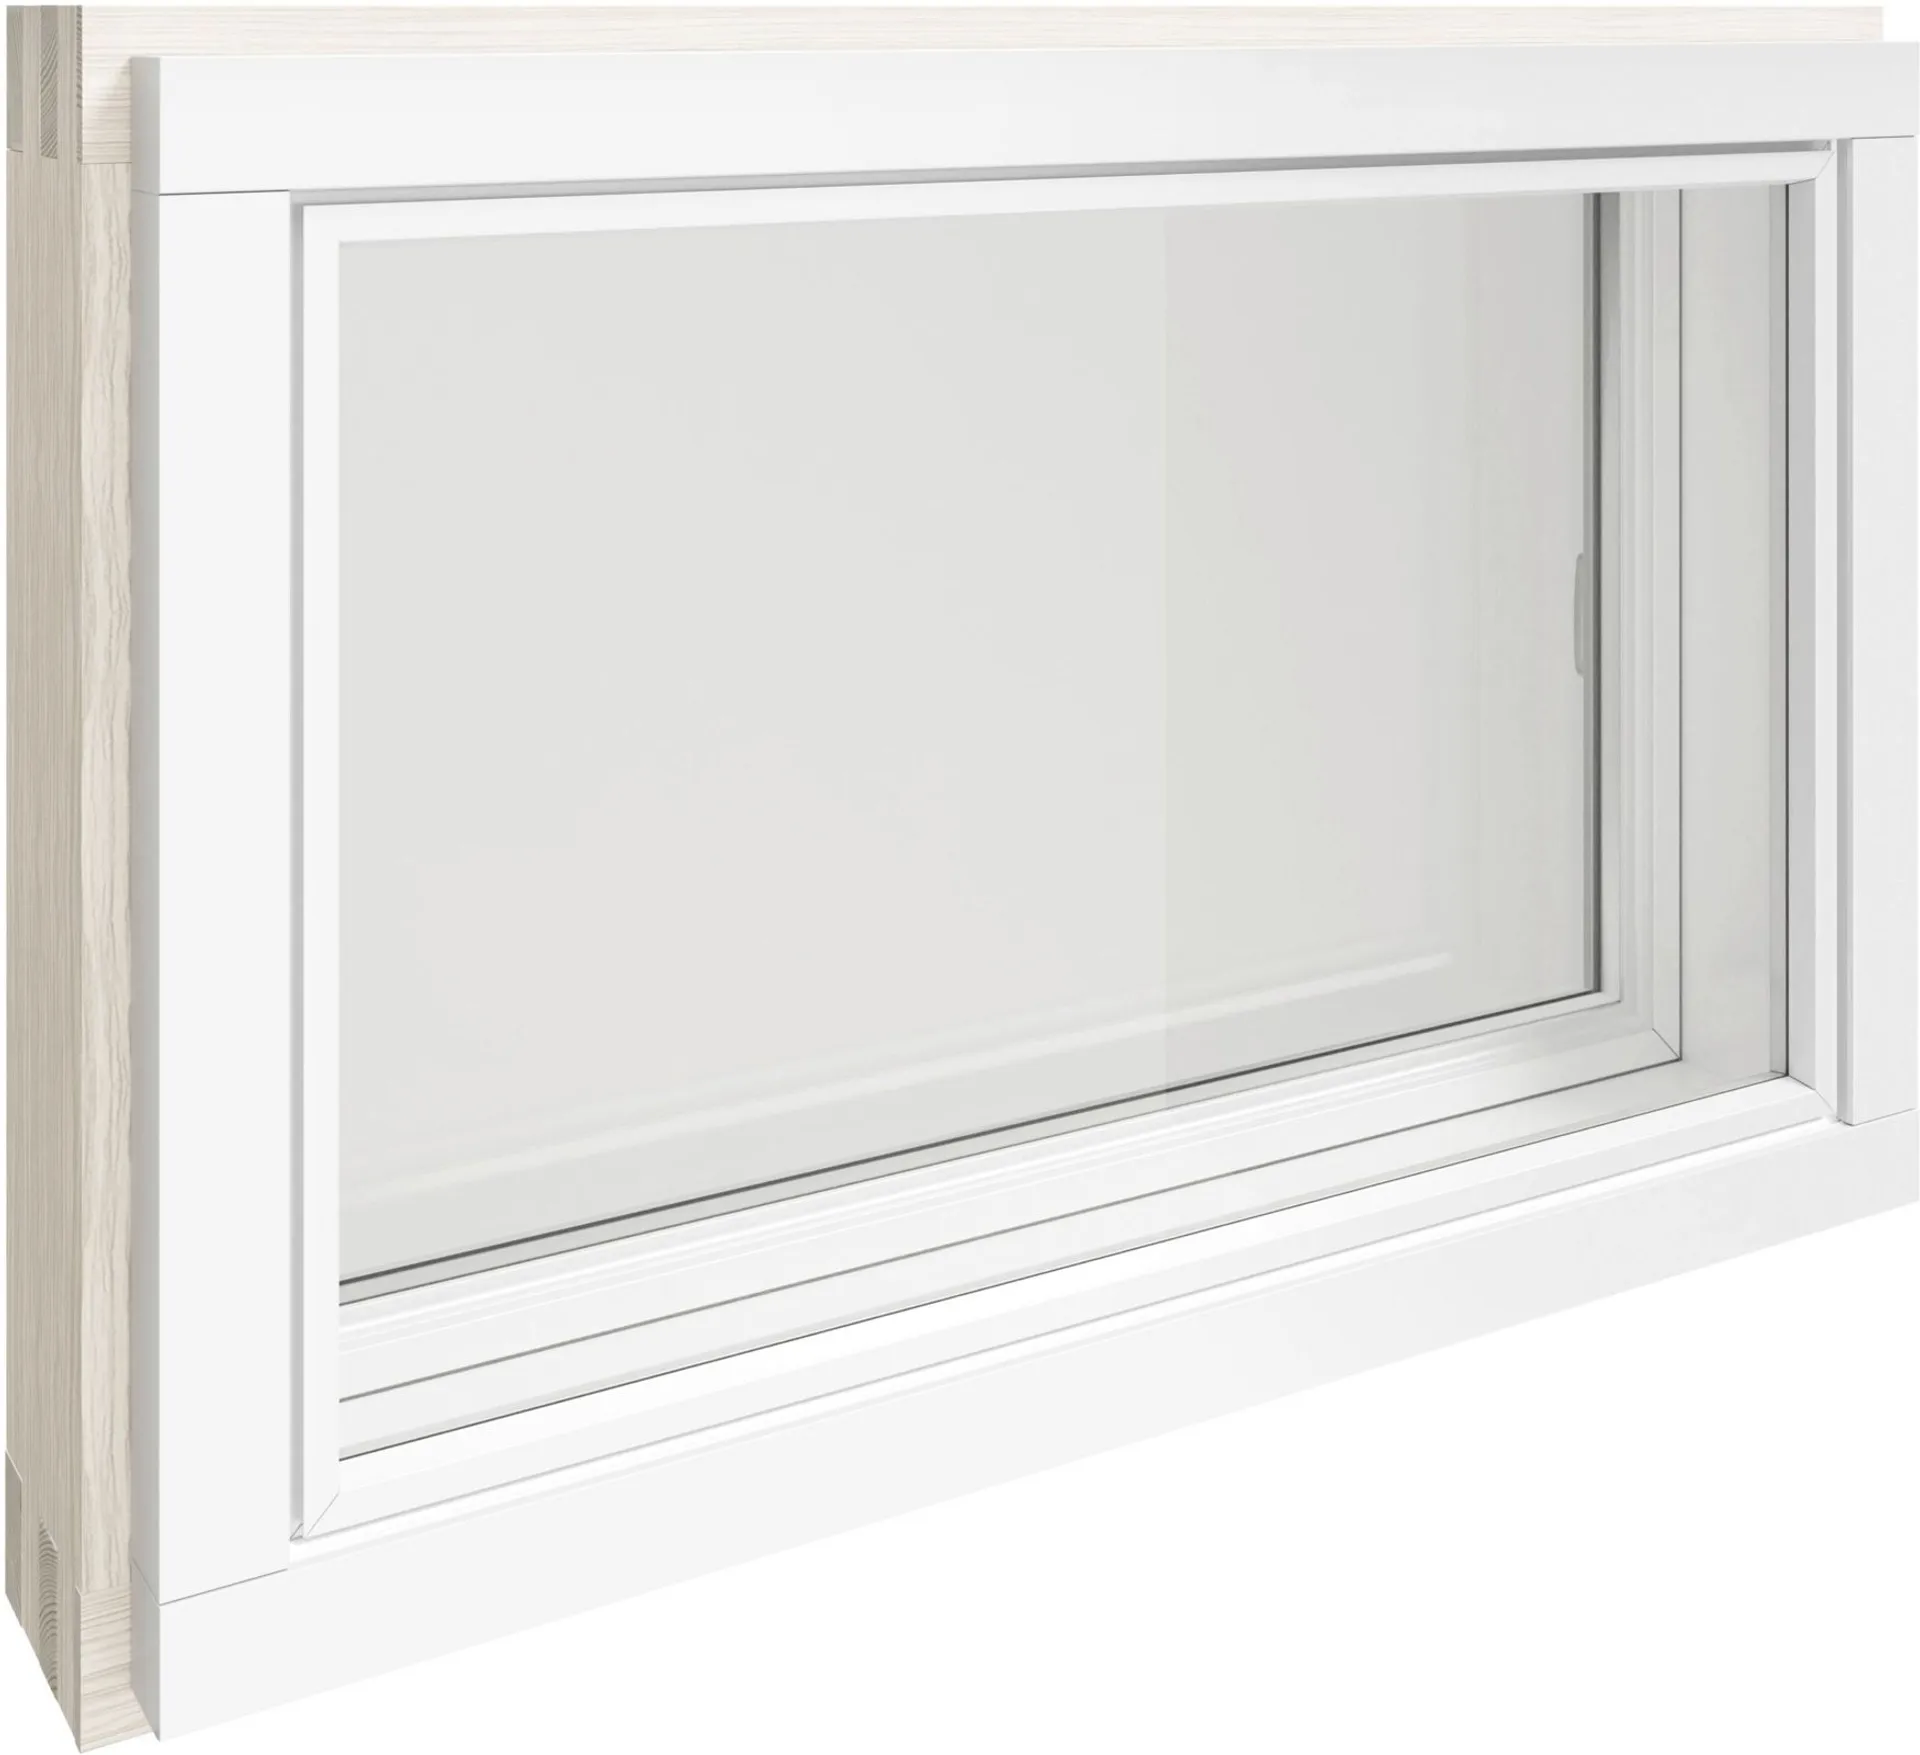 Kaski Ikkuna MSEA 9x6 valkoinen tuuletusikkuna